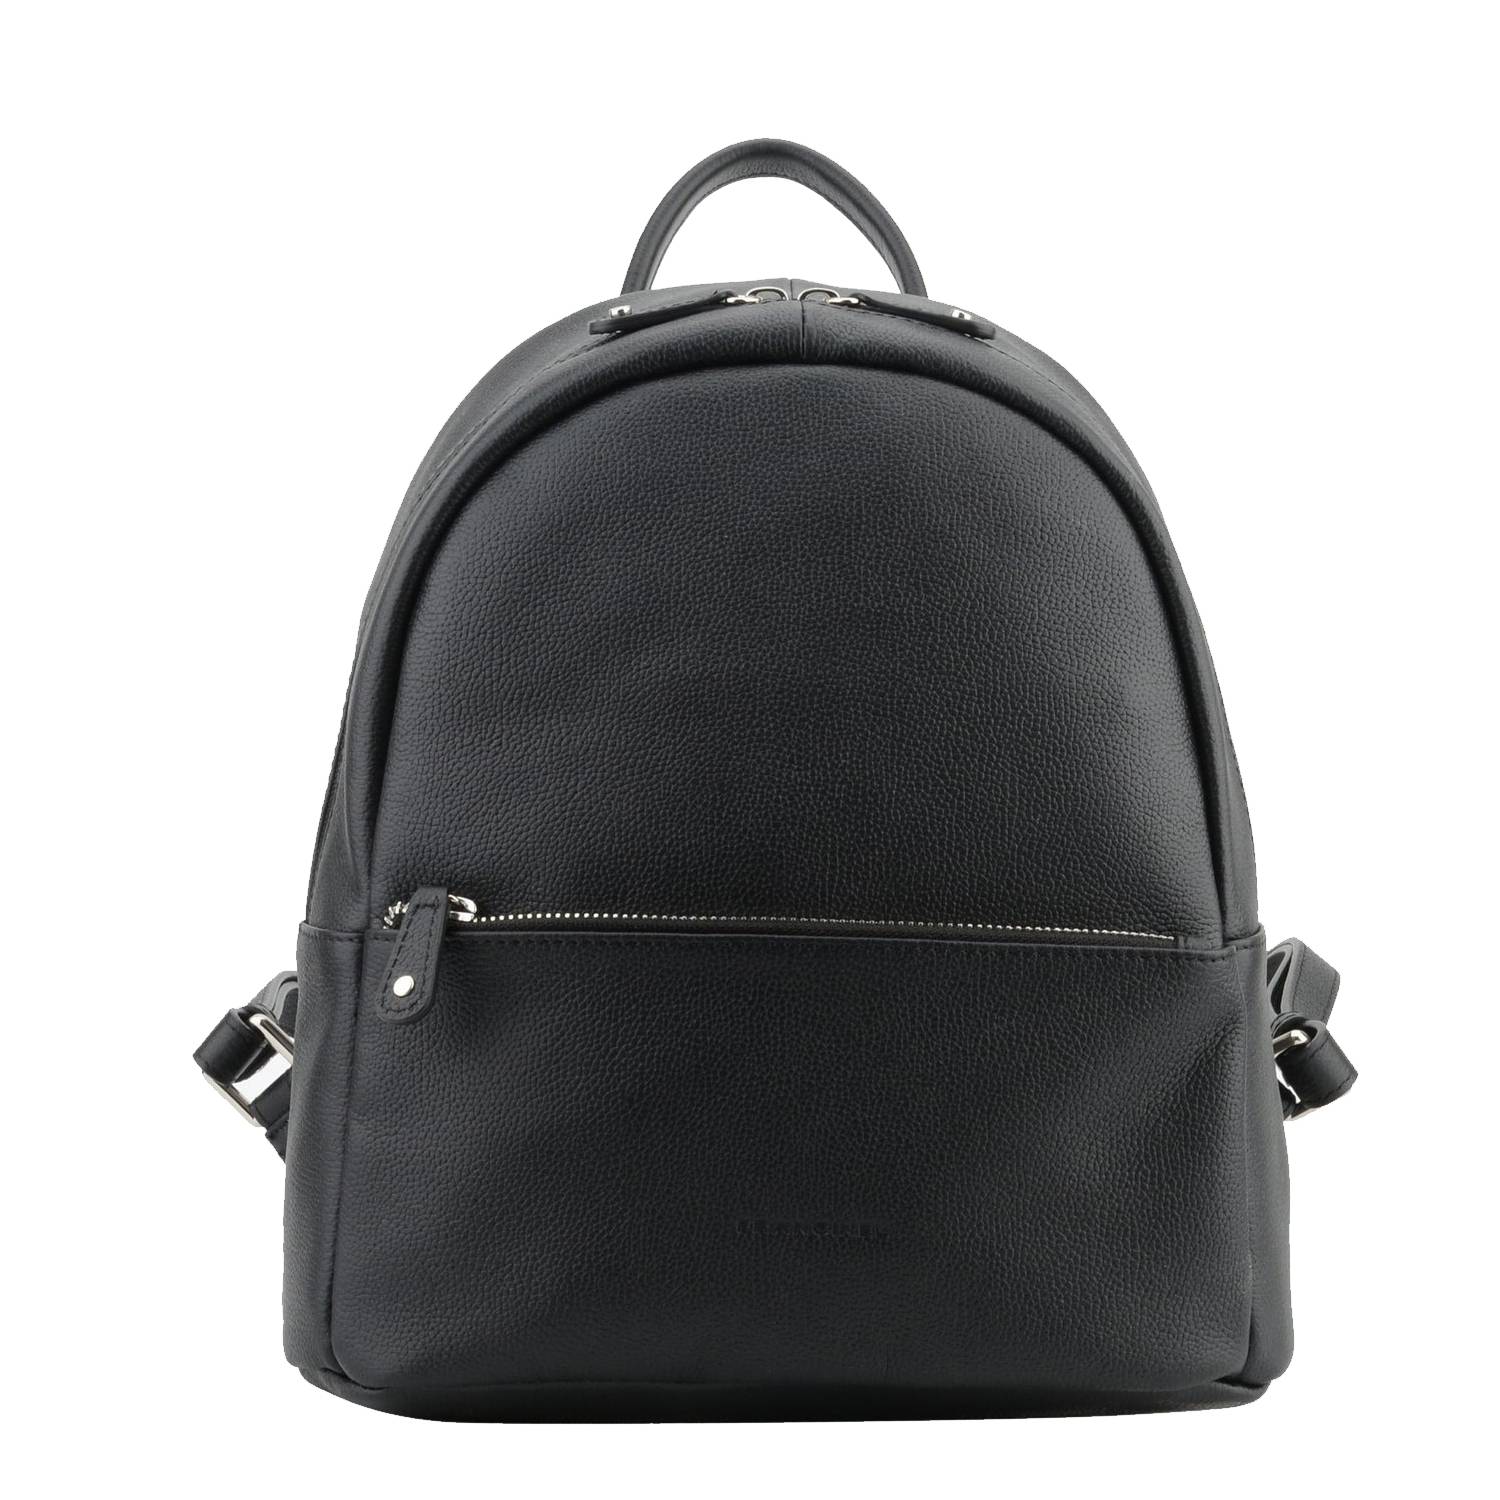 Mini sac à dos Francinel zippé Tiana 22328 NR couleur noir, vue de face